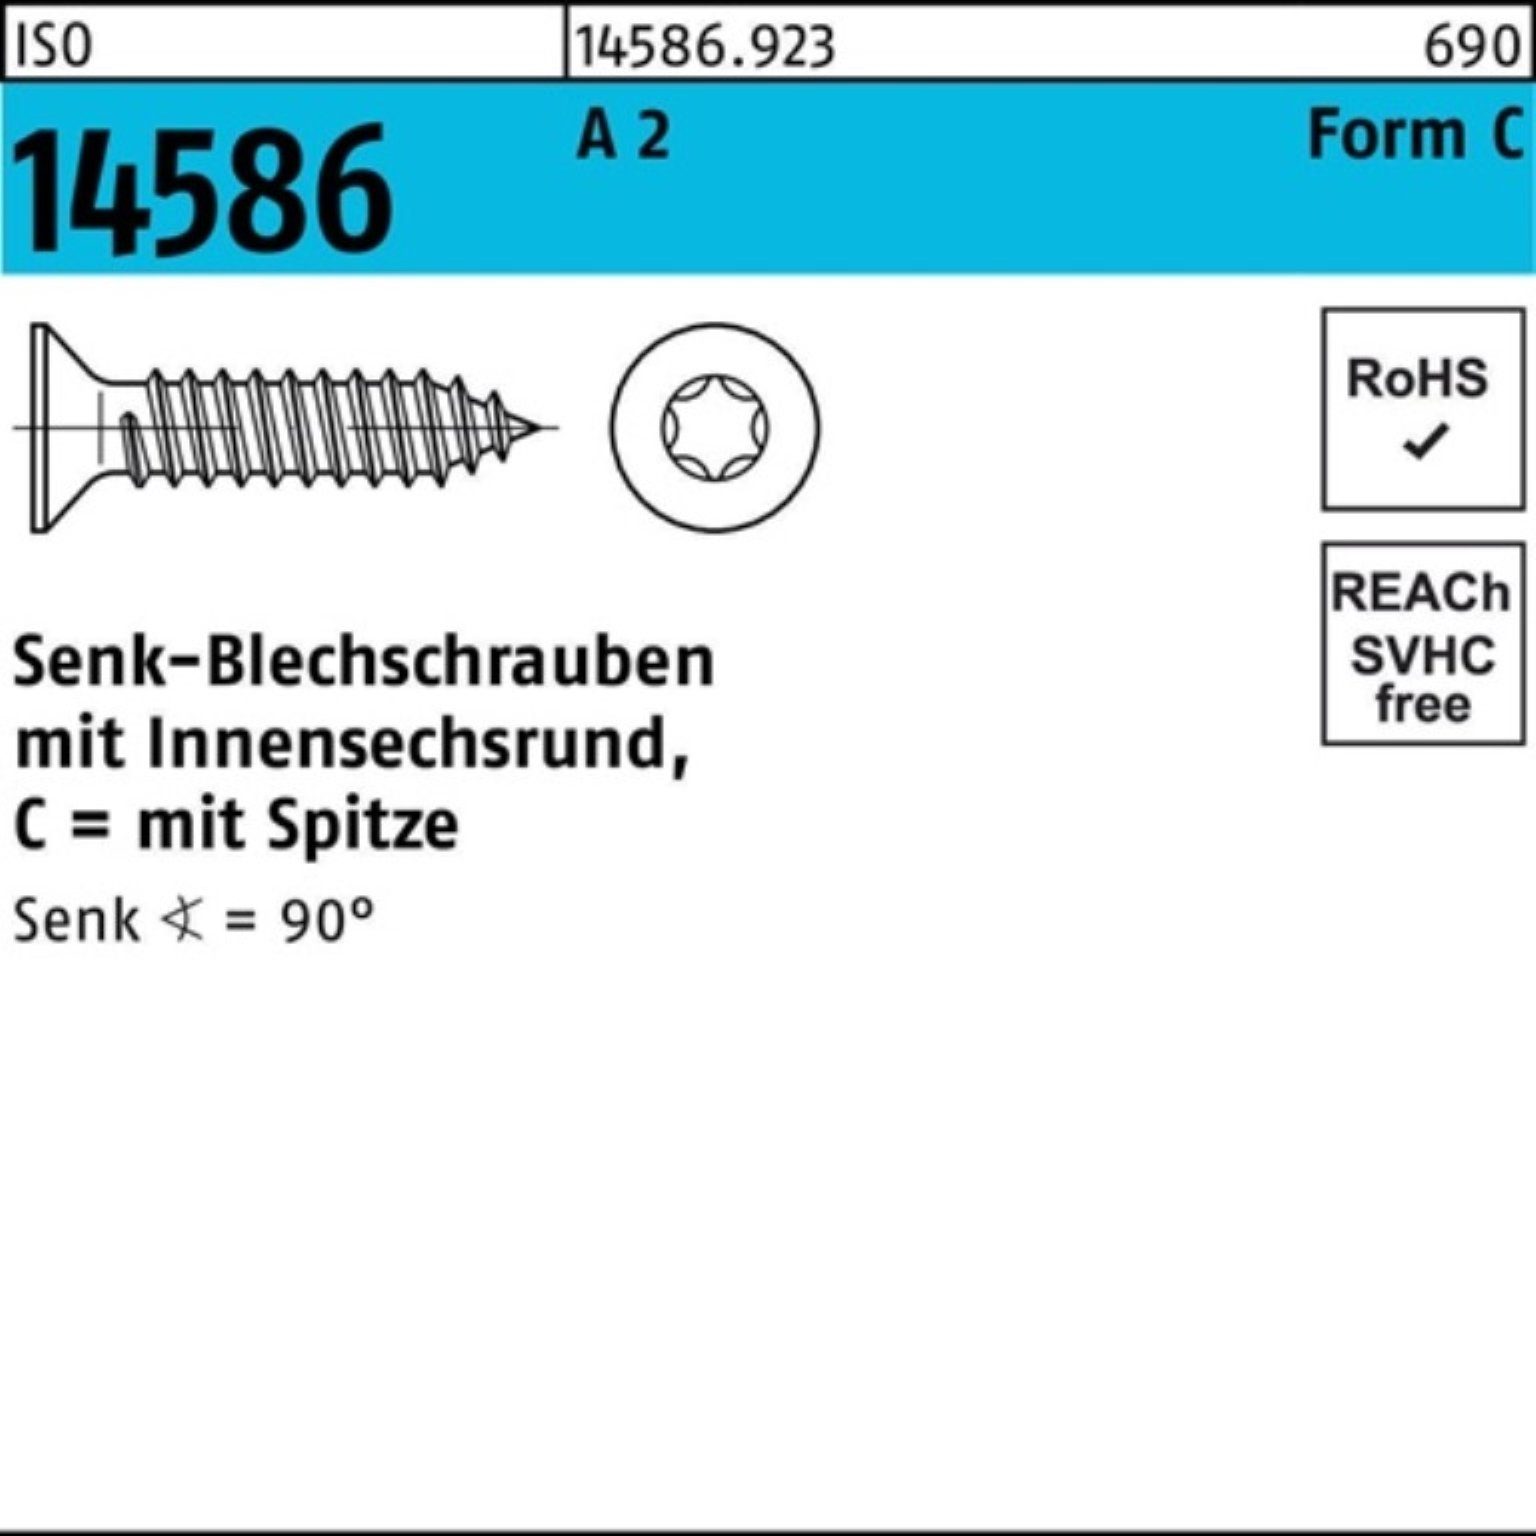 2 Pack 4,8x -C Reyher ISR/Spitze ISO Senkblechschraube 38 A Schraube 2 T25 250er 14586